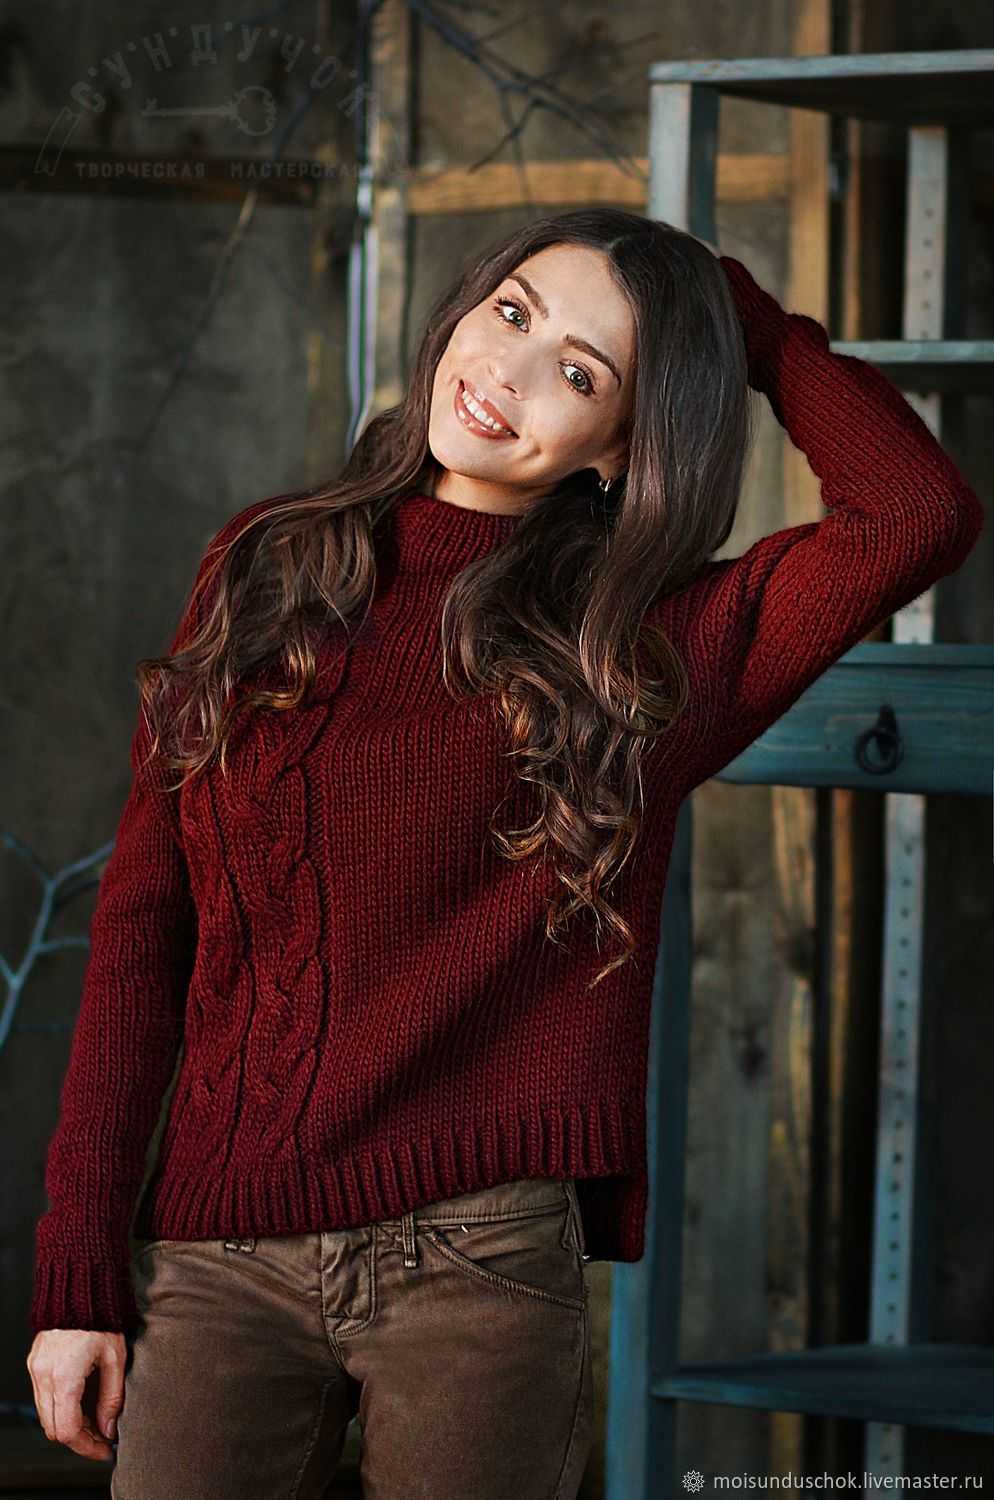 Насыщенный бордовый оттенок или бургунди – тренд сезона, поэтому в вашем гардеробе должно найтись место для красивого свитера бордового цвета Кому пойдет бордовый свитер и с чем его носить